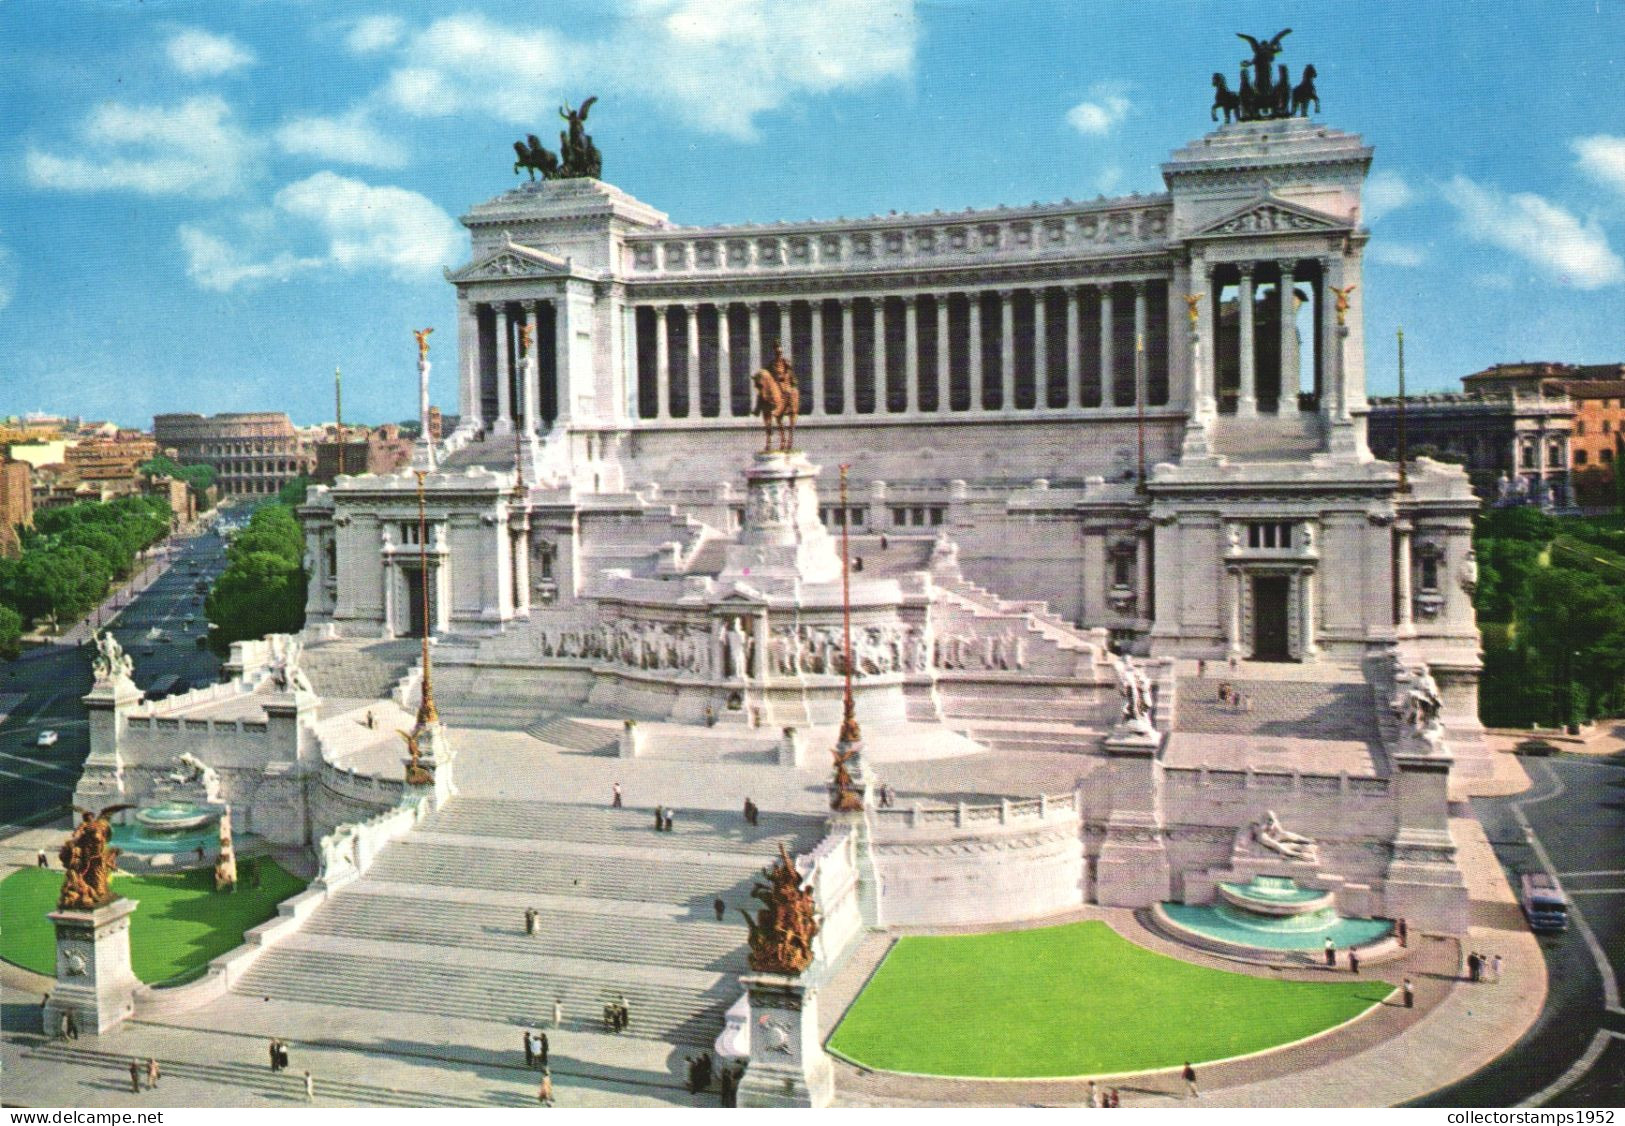 ROME, ALTAR OF THE NATION, STATUES, MONUMENT, COLOSSEUM, ITALY - Altare Della Patria